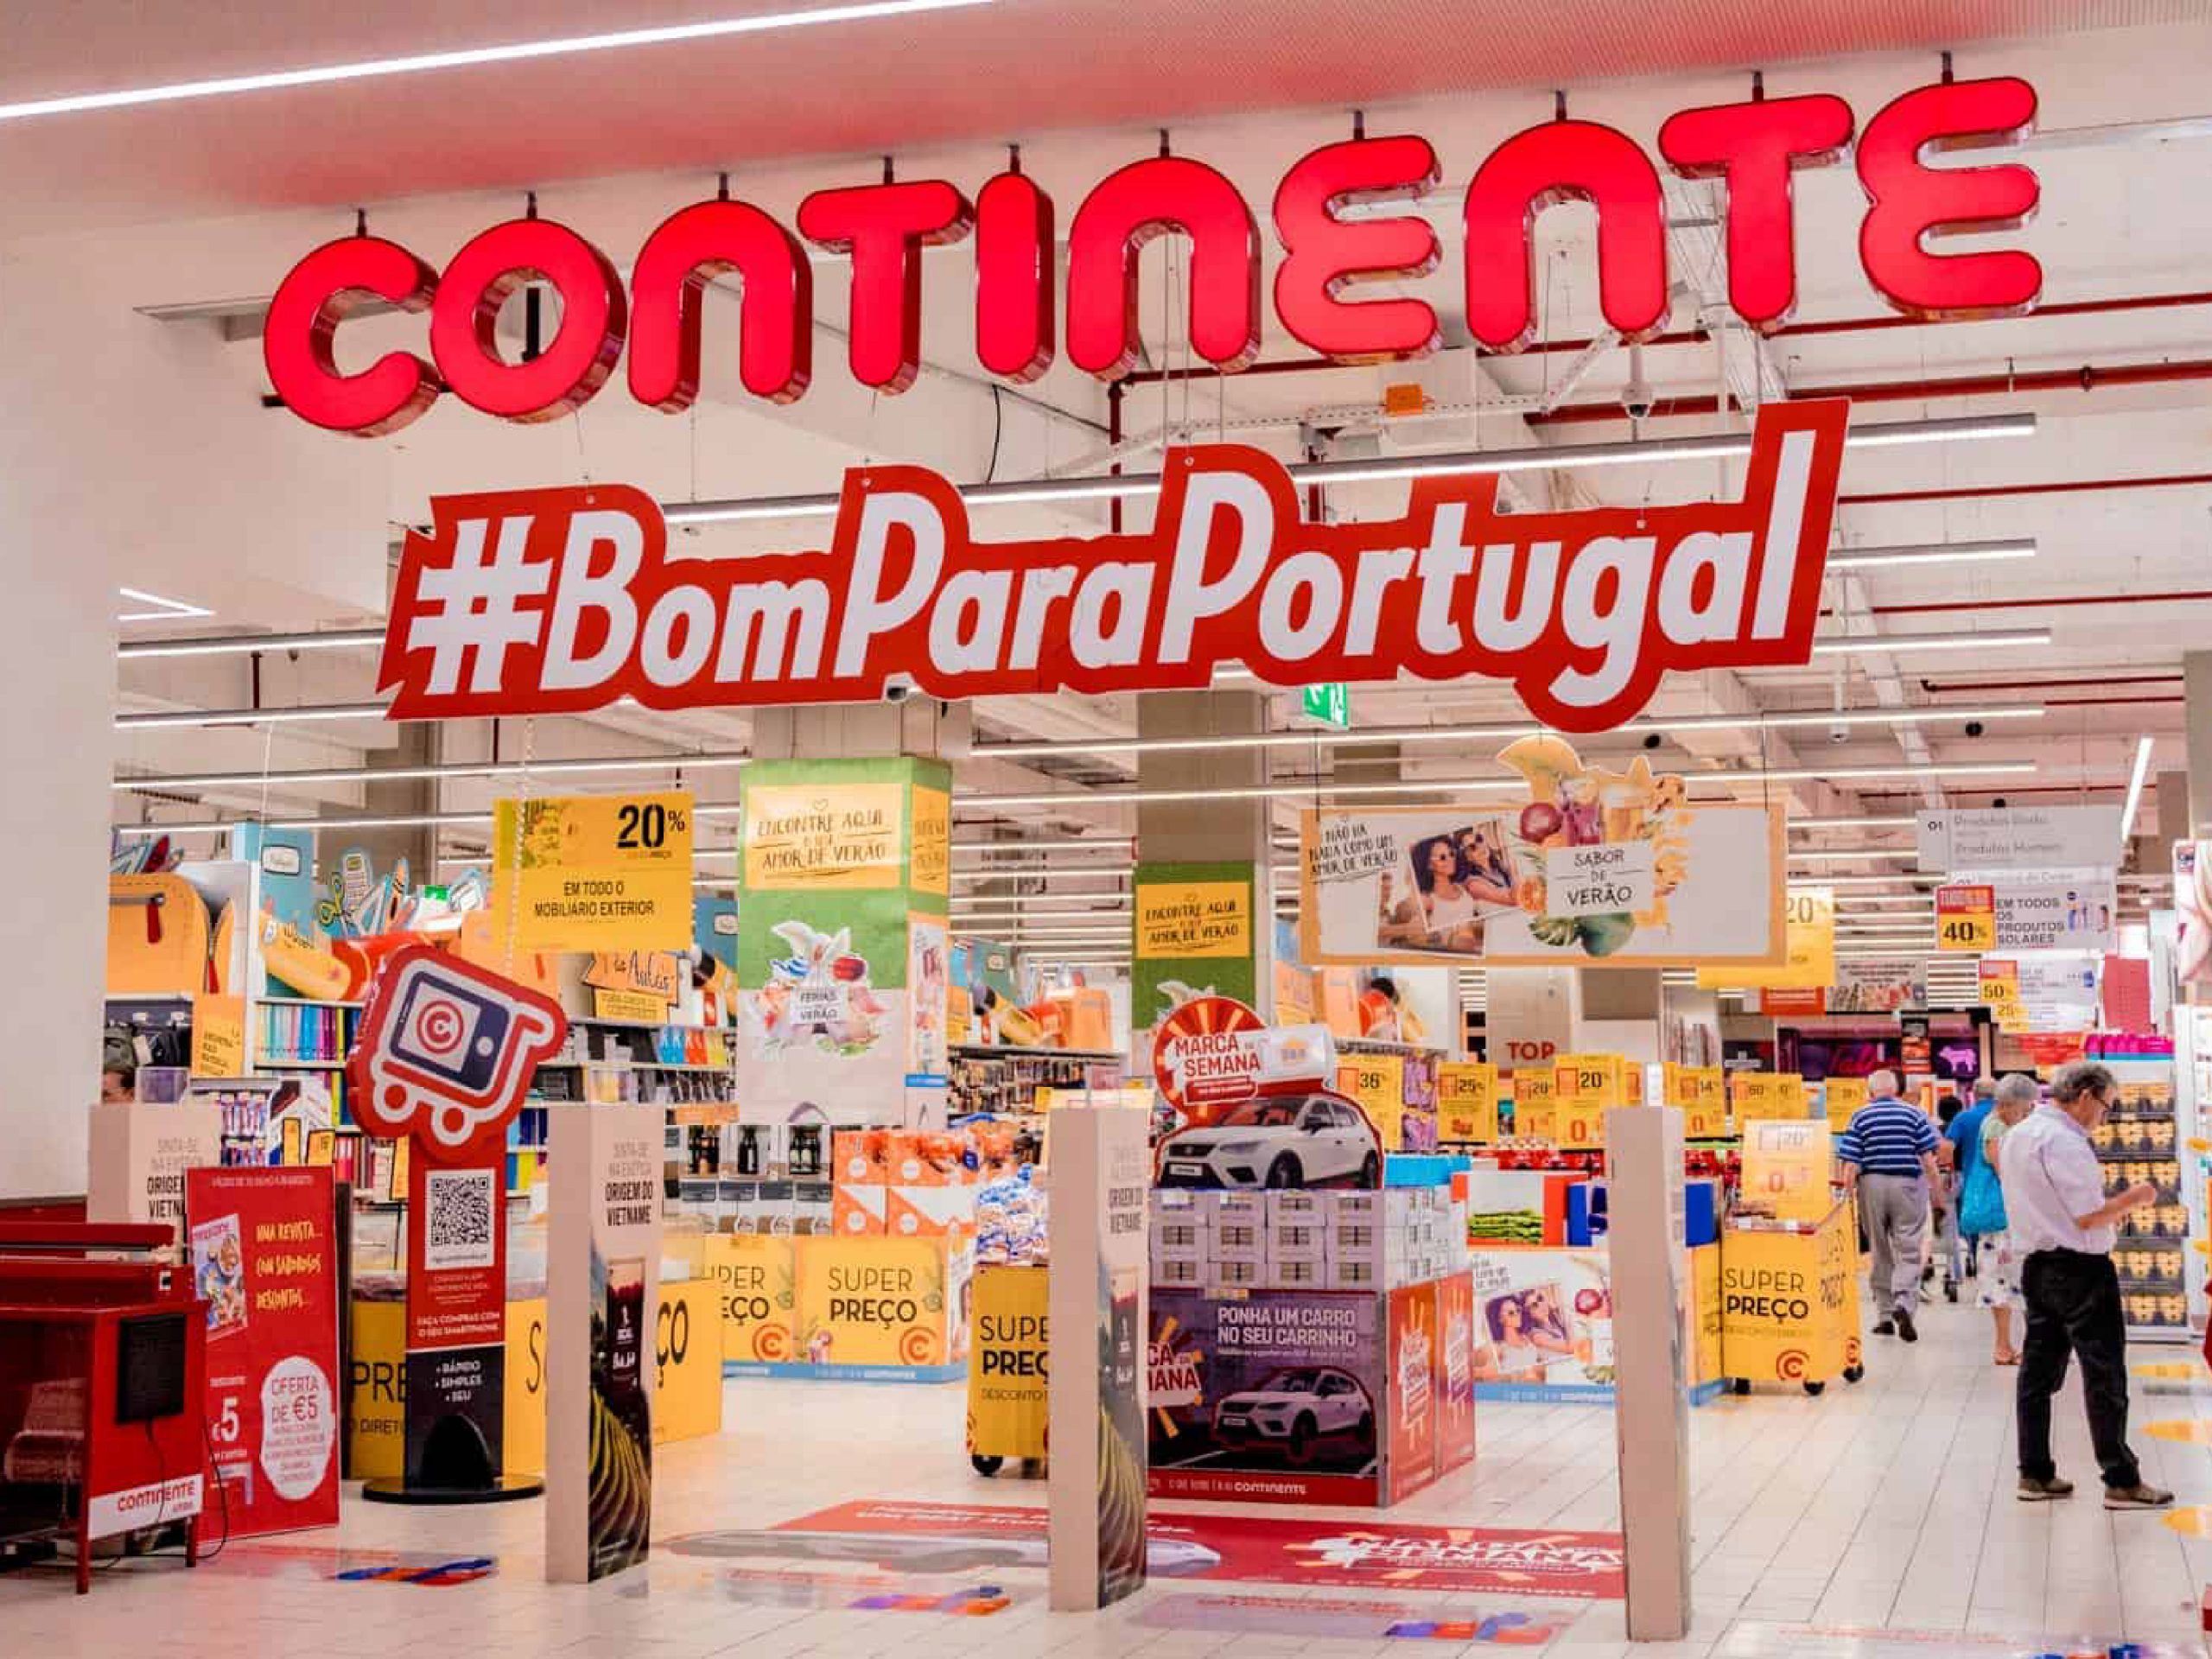 Chi phí sinh hoạt ở Bồ Đào Nha